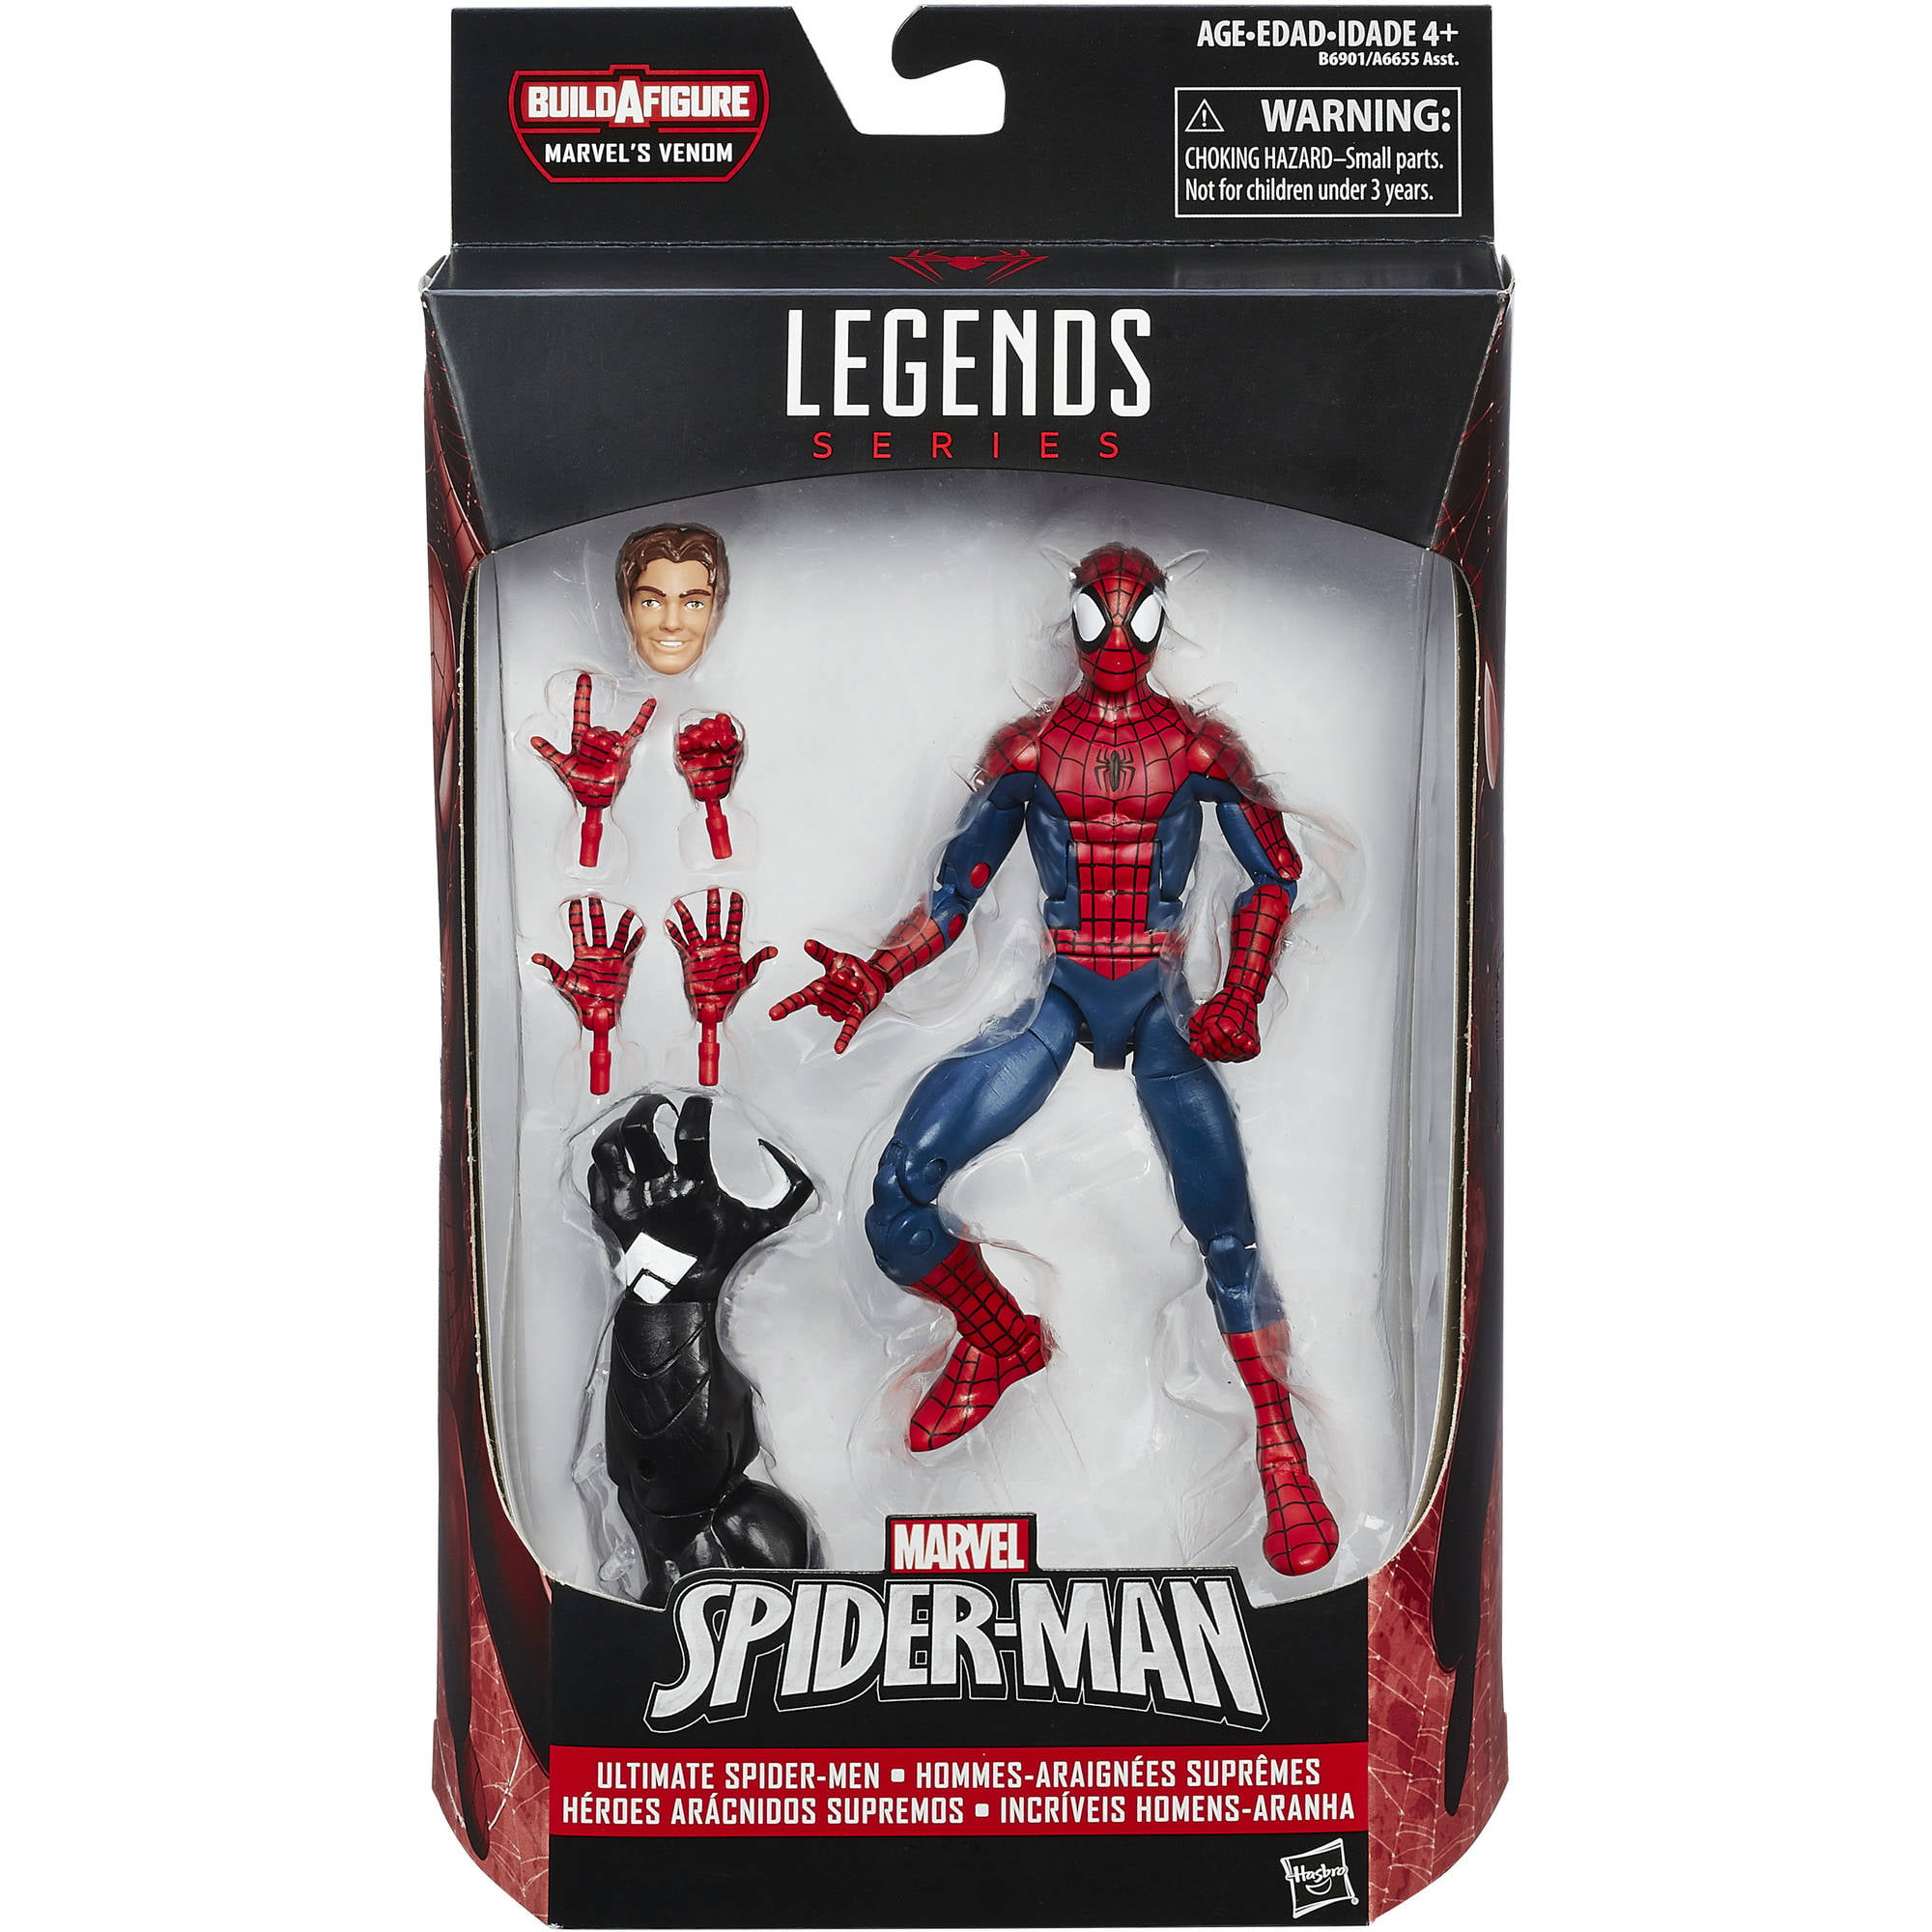 SET OF 6 Marvel Legends 6" Spider-Man Vintage Wave 1 